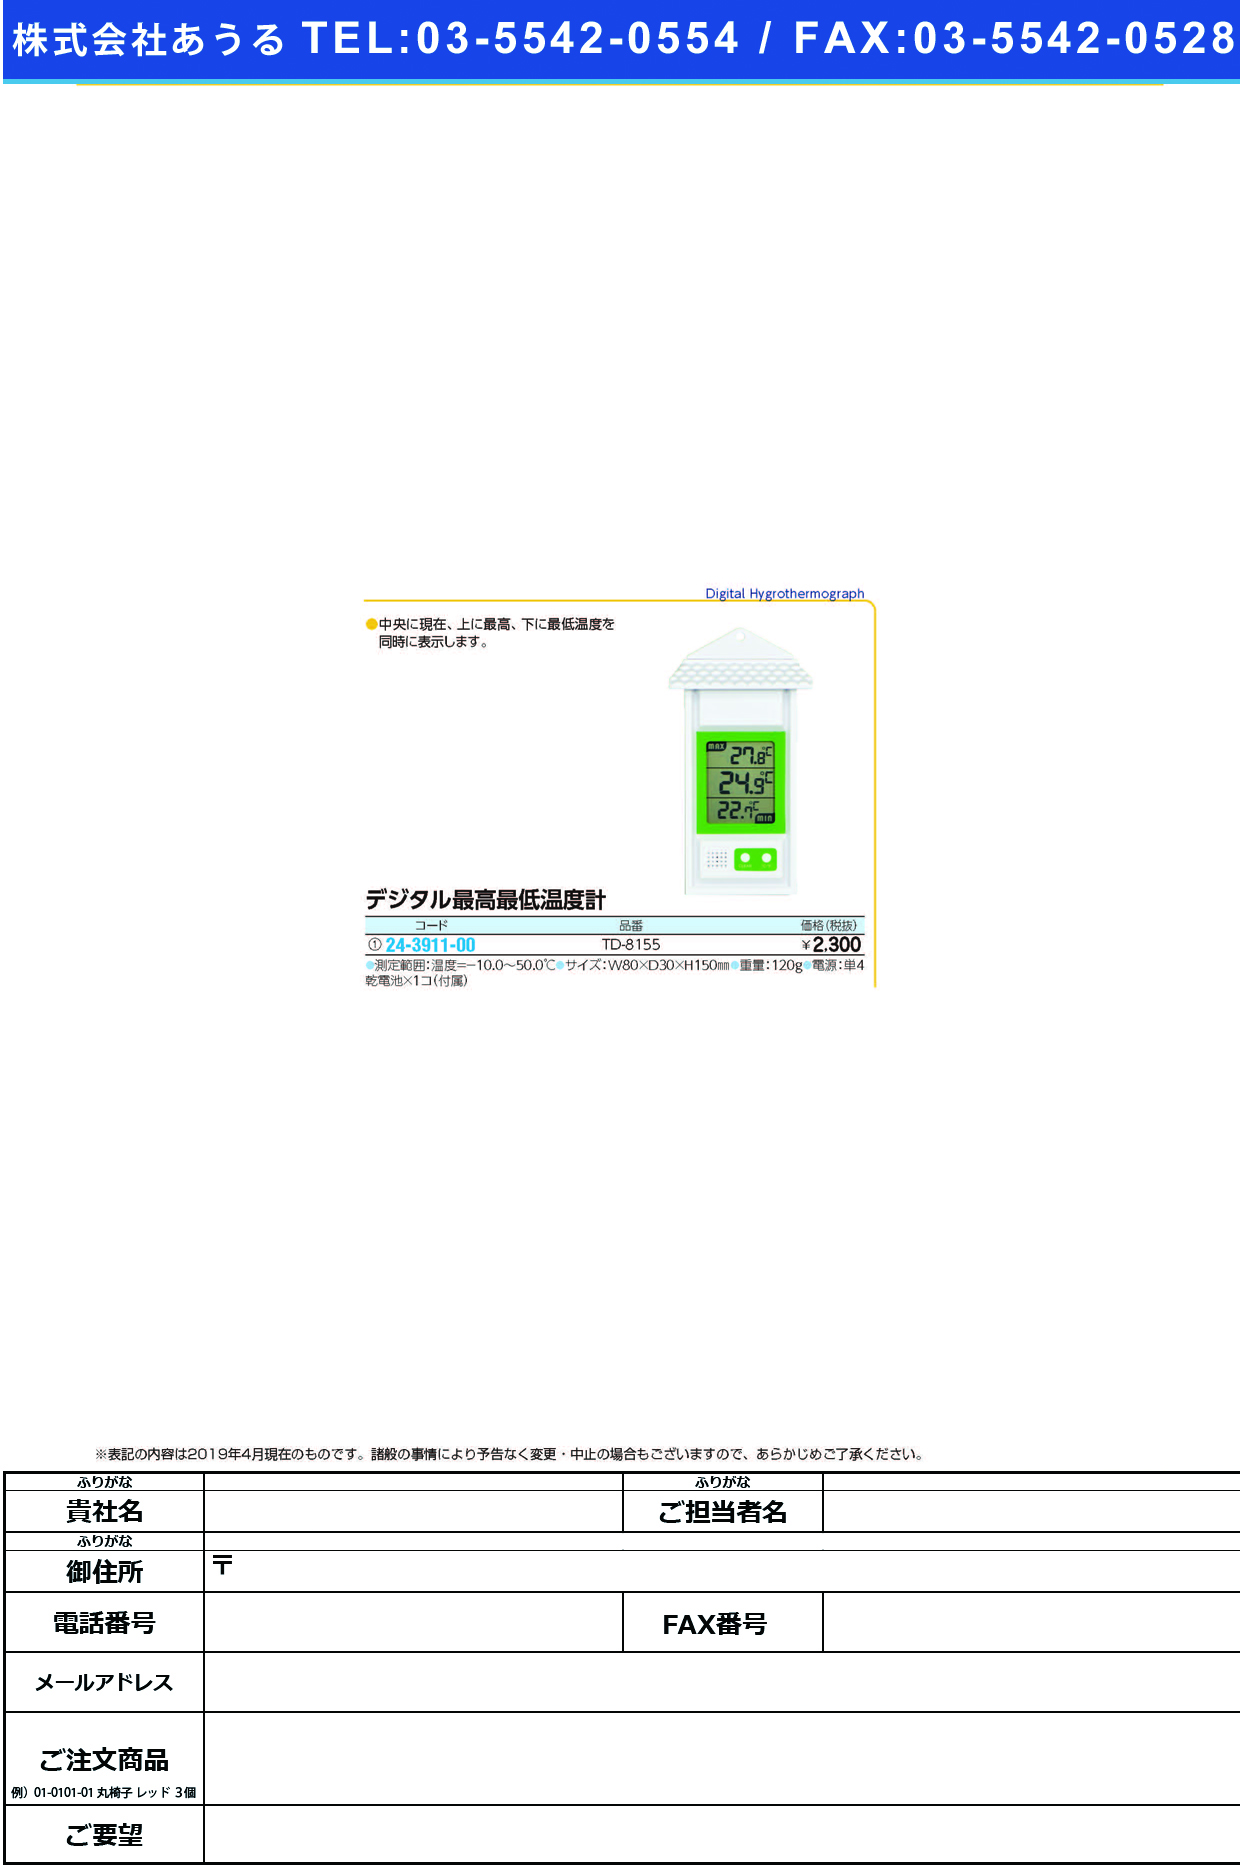 (24-3911-00)エンペックスデジタル最高最低温度計 TD-8155 ﾃﾞｼﾞﾀﾙｻｲｺｳｻｲﾃｲｵﾝﾄﾞｹｲ【1個単位】【2019年カタログ商品】